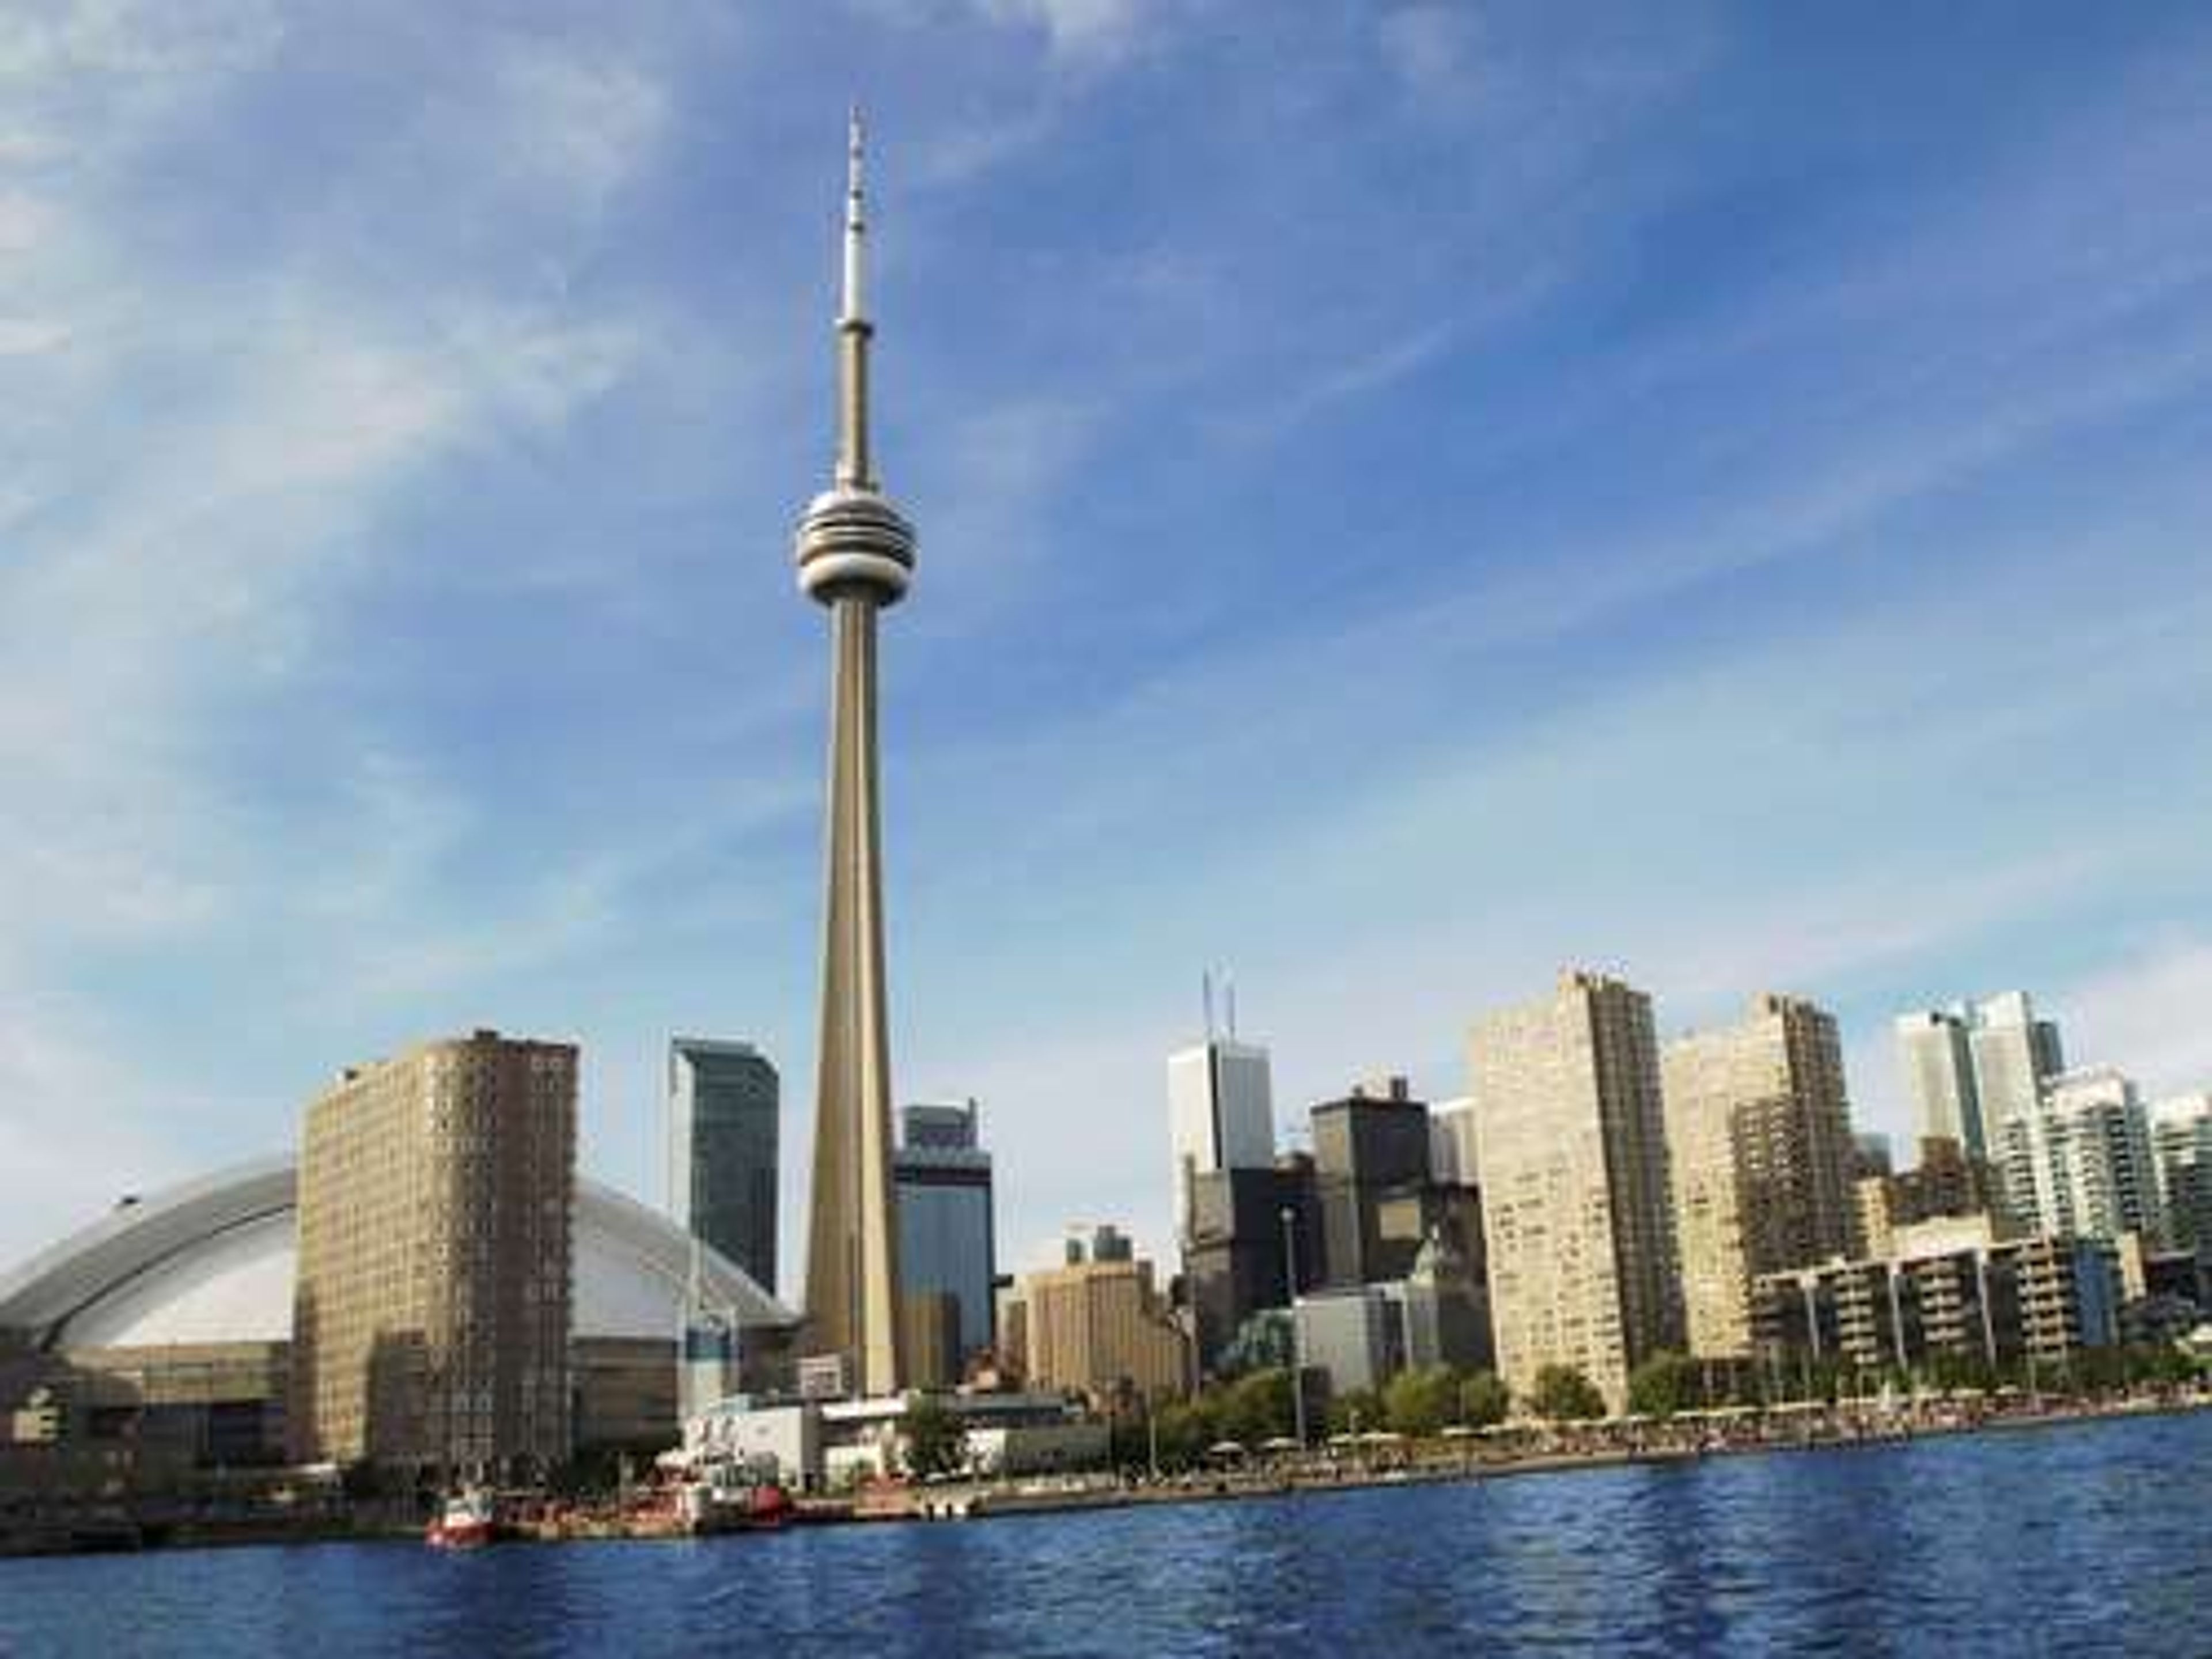 Canada Toronto skyline including the CN Tower